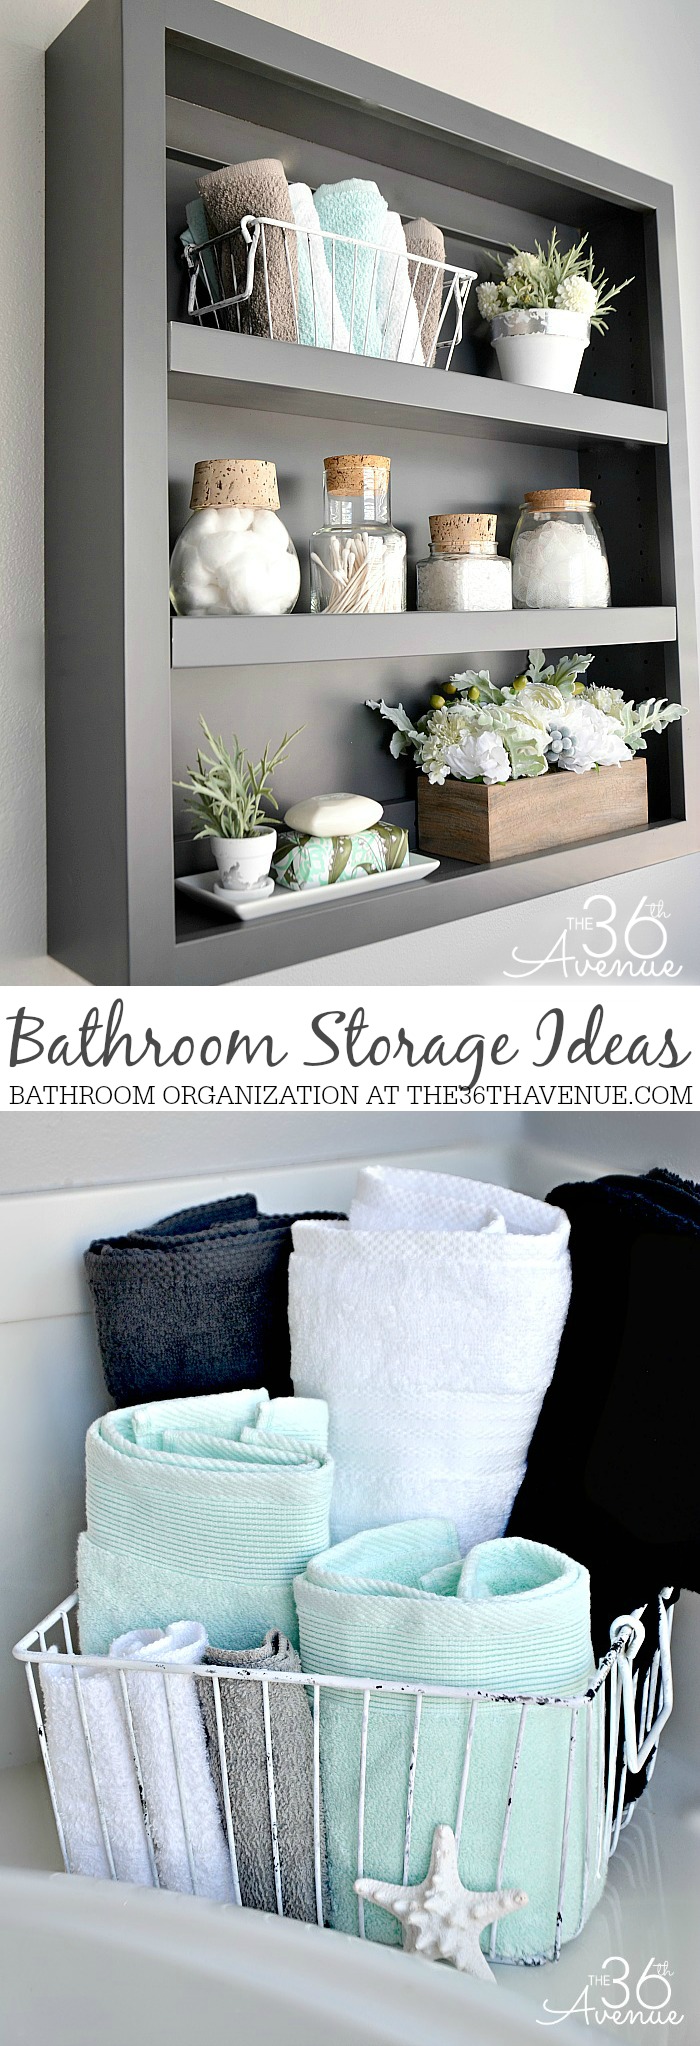 Ideas for Bathroom Storage